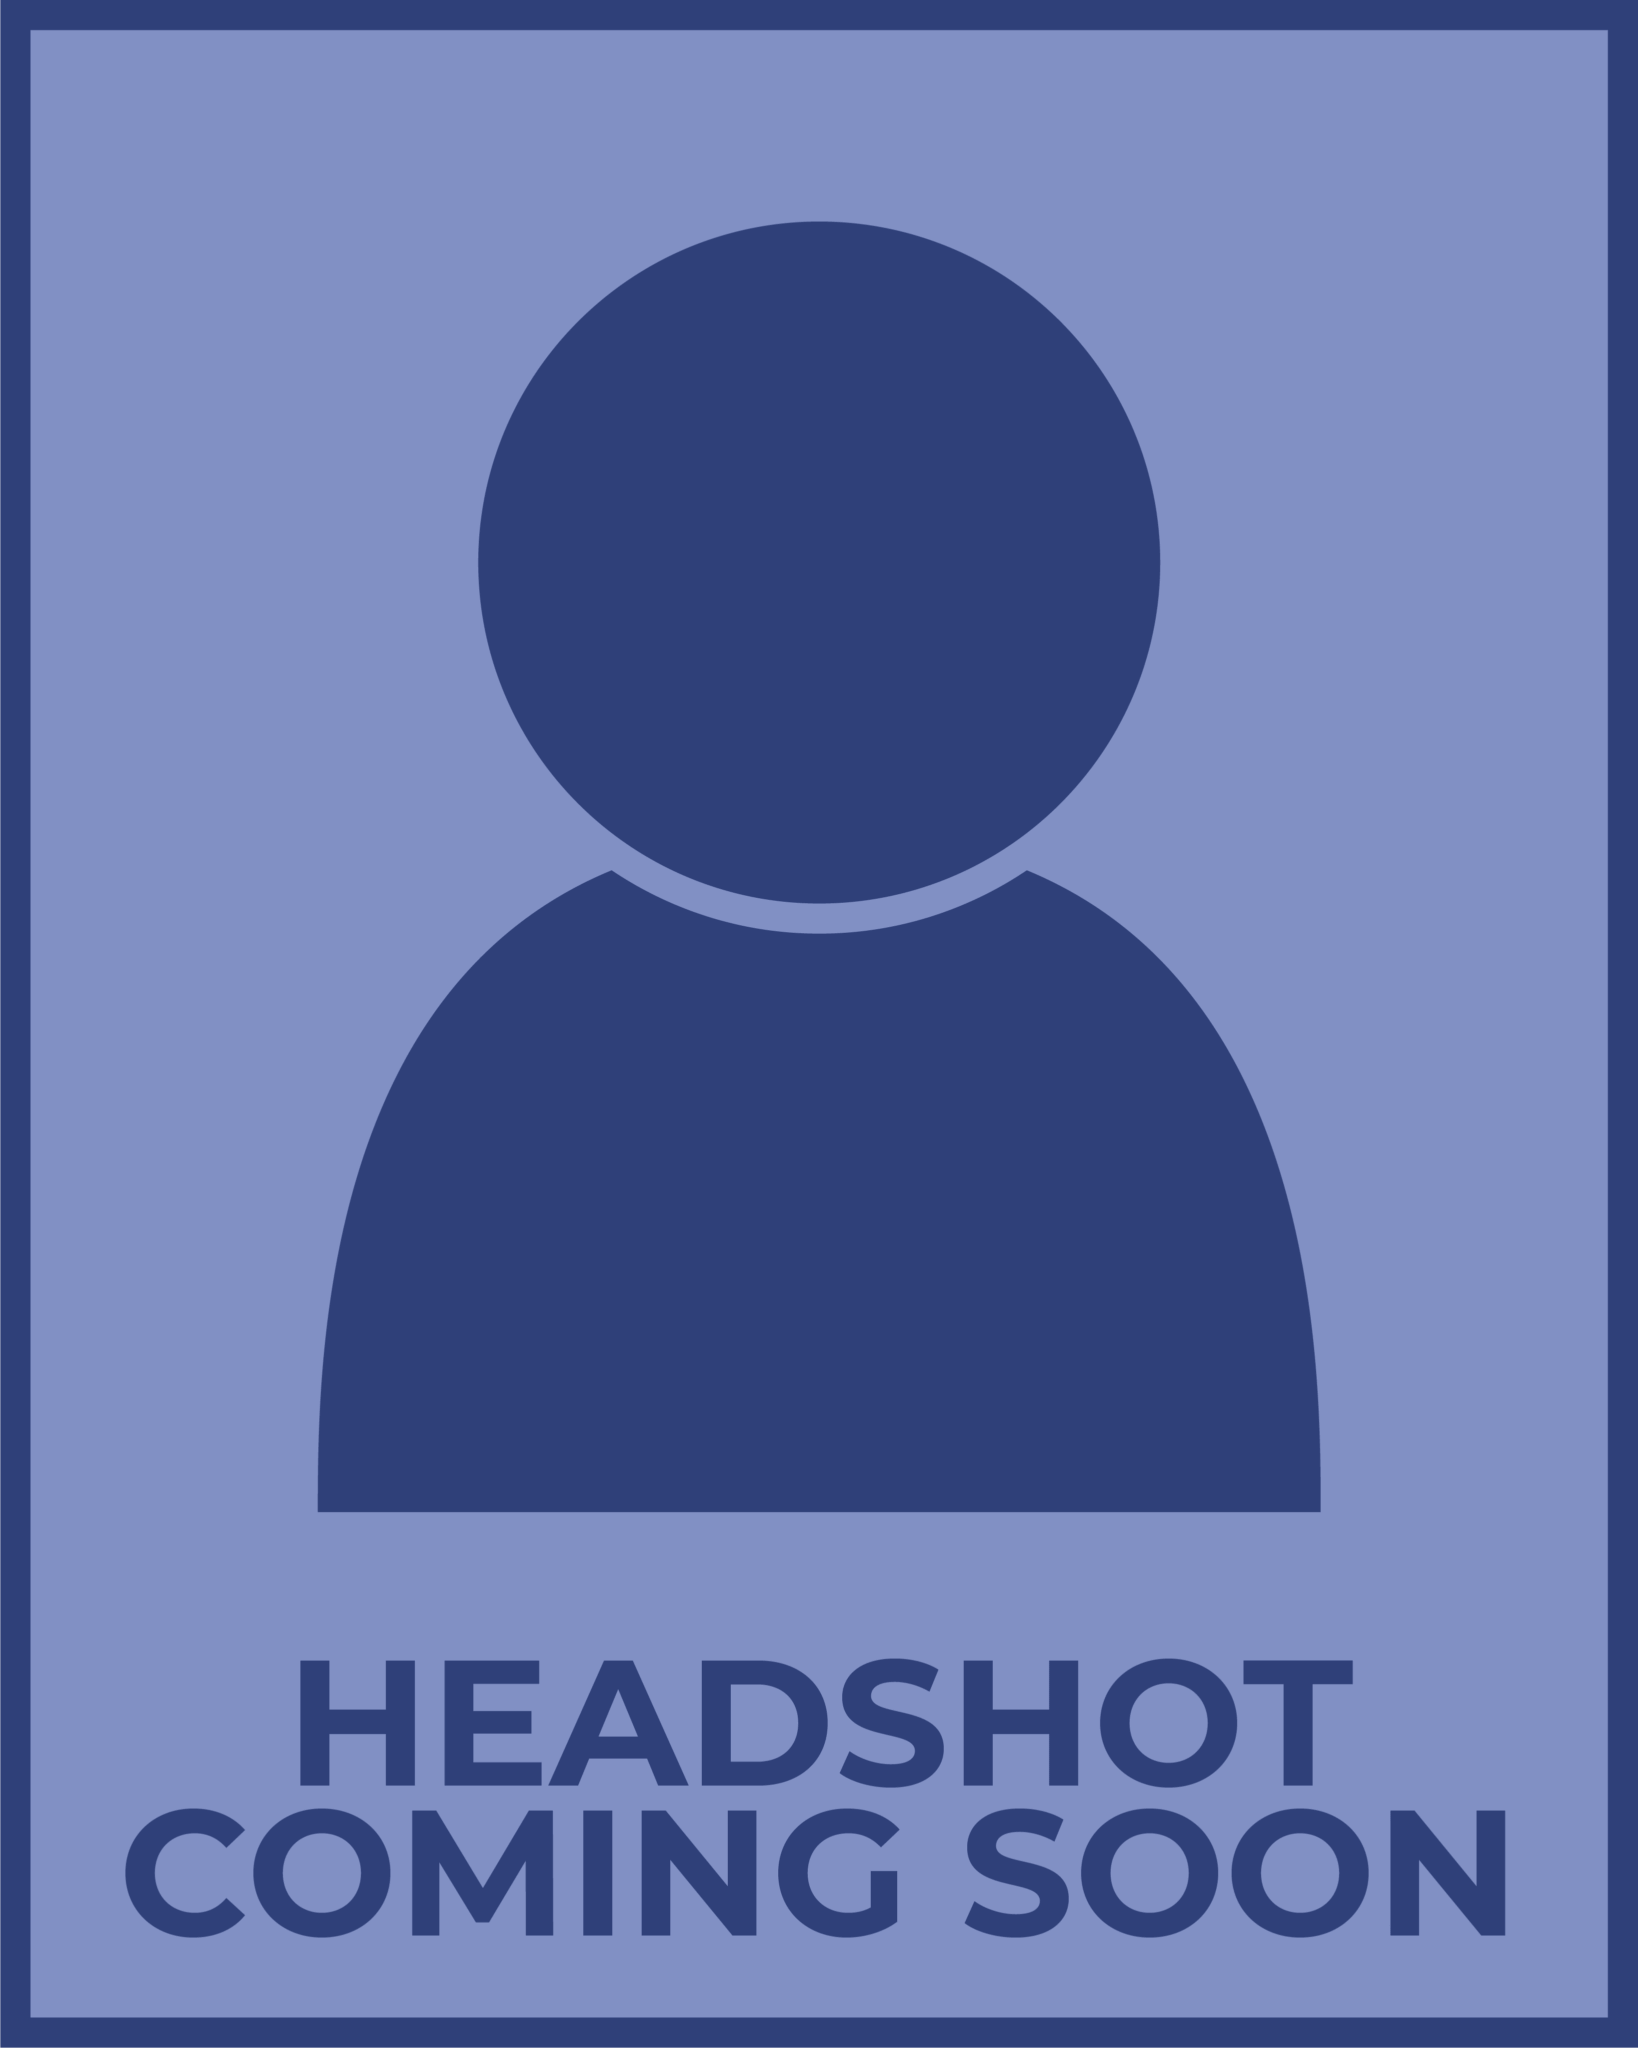 Headshot Coming Soon